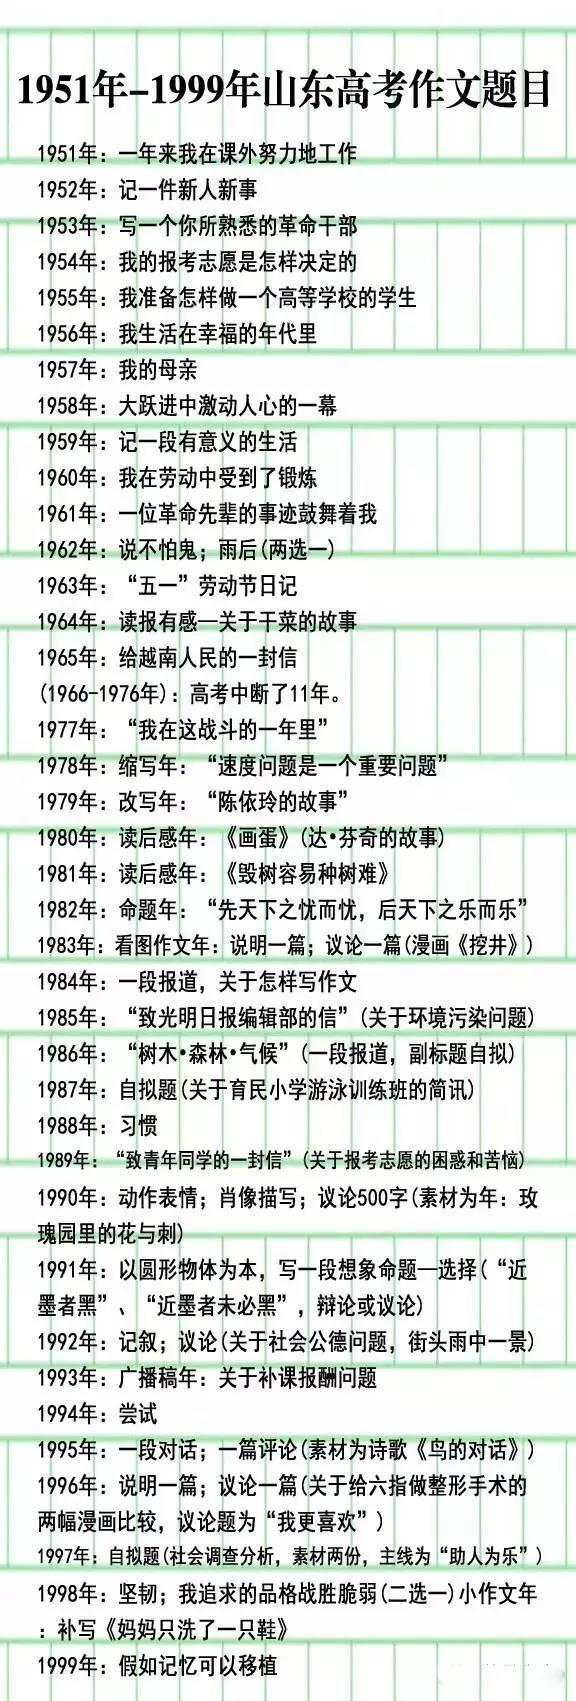 2016高考山东作文为“我的行囊” 盘点历年作文题(图)